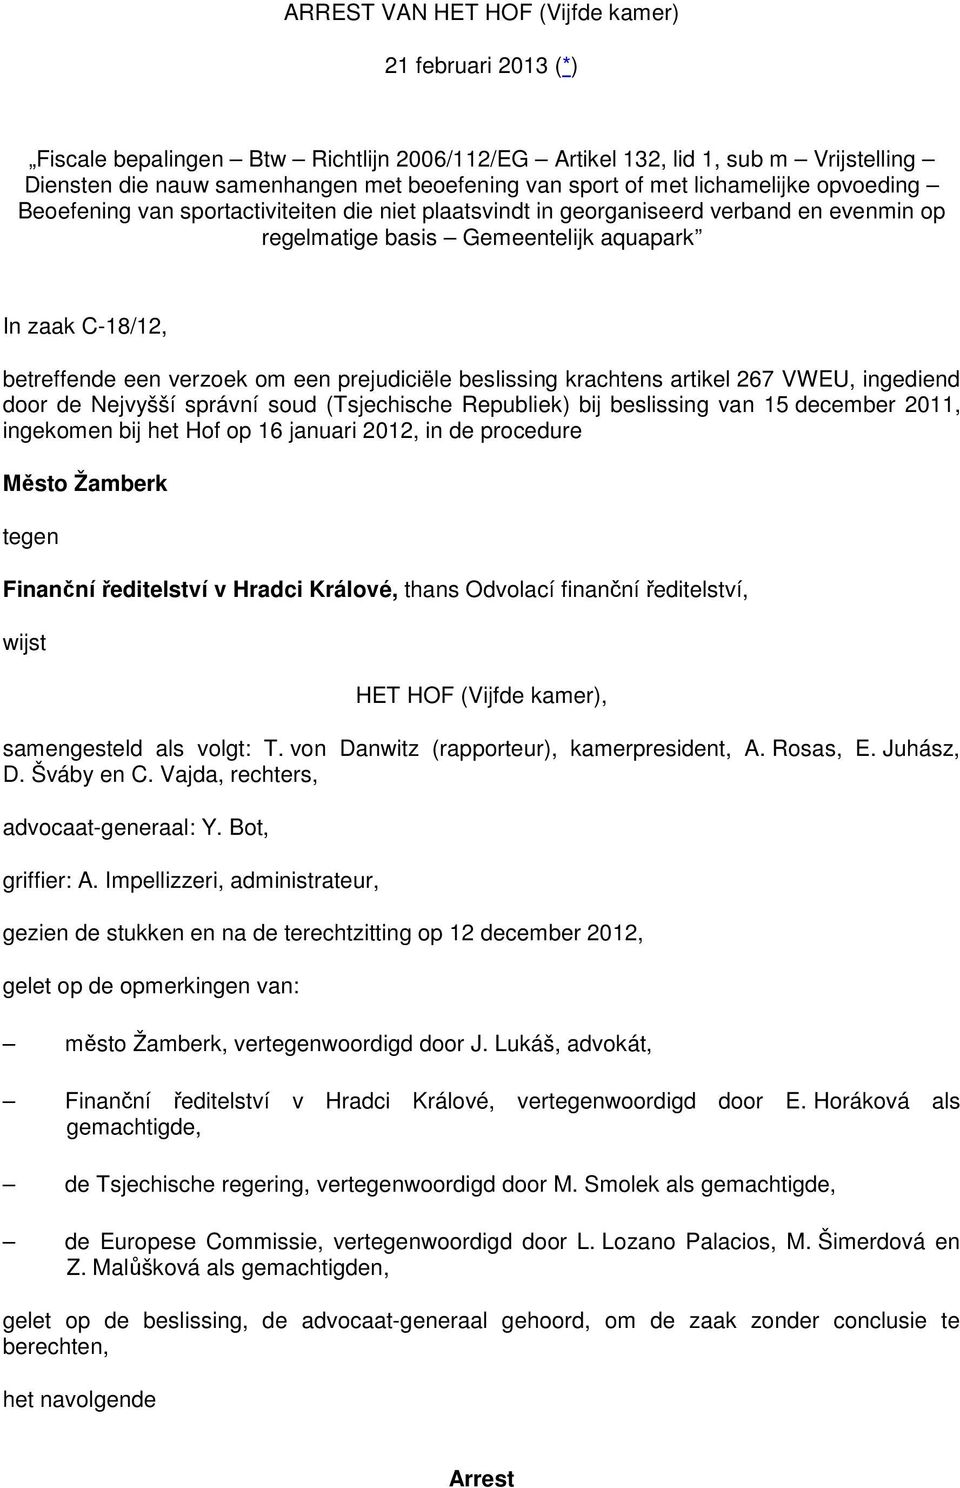 verzoek om een prejudiciële beslissing krachtens artikel 267 VWEU, ingediend door de Nejvyšší správní soud (Tsjechische Republiek) bij beslissing van 15 december 2011, ingekomen bij het Hof op 16